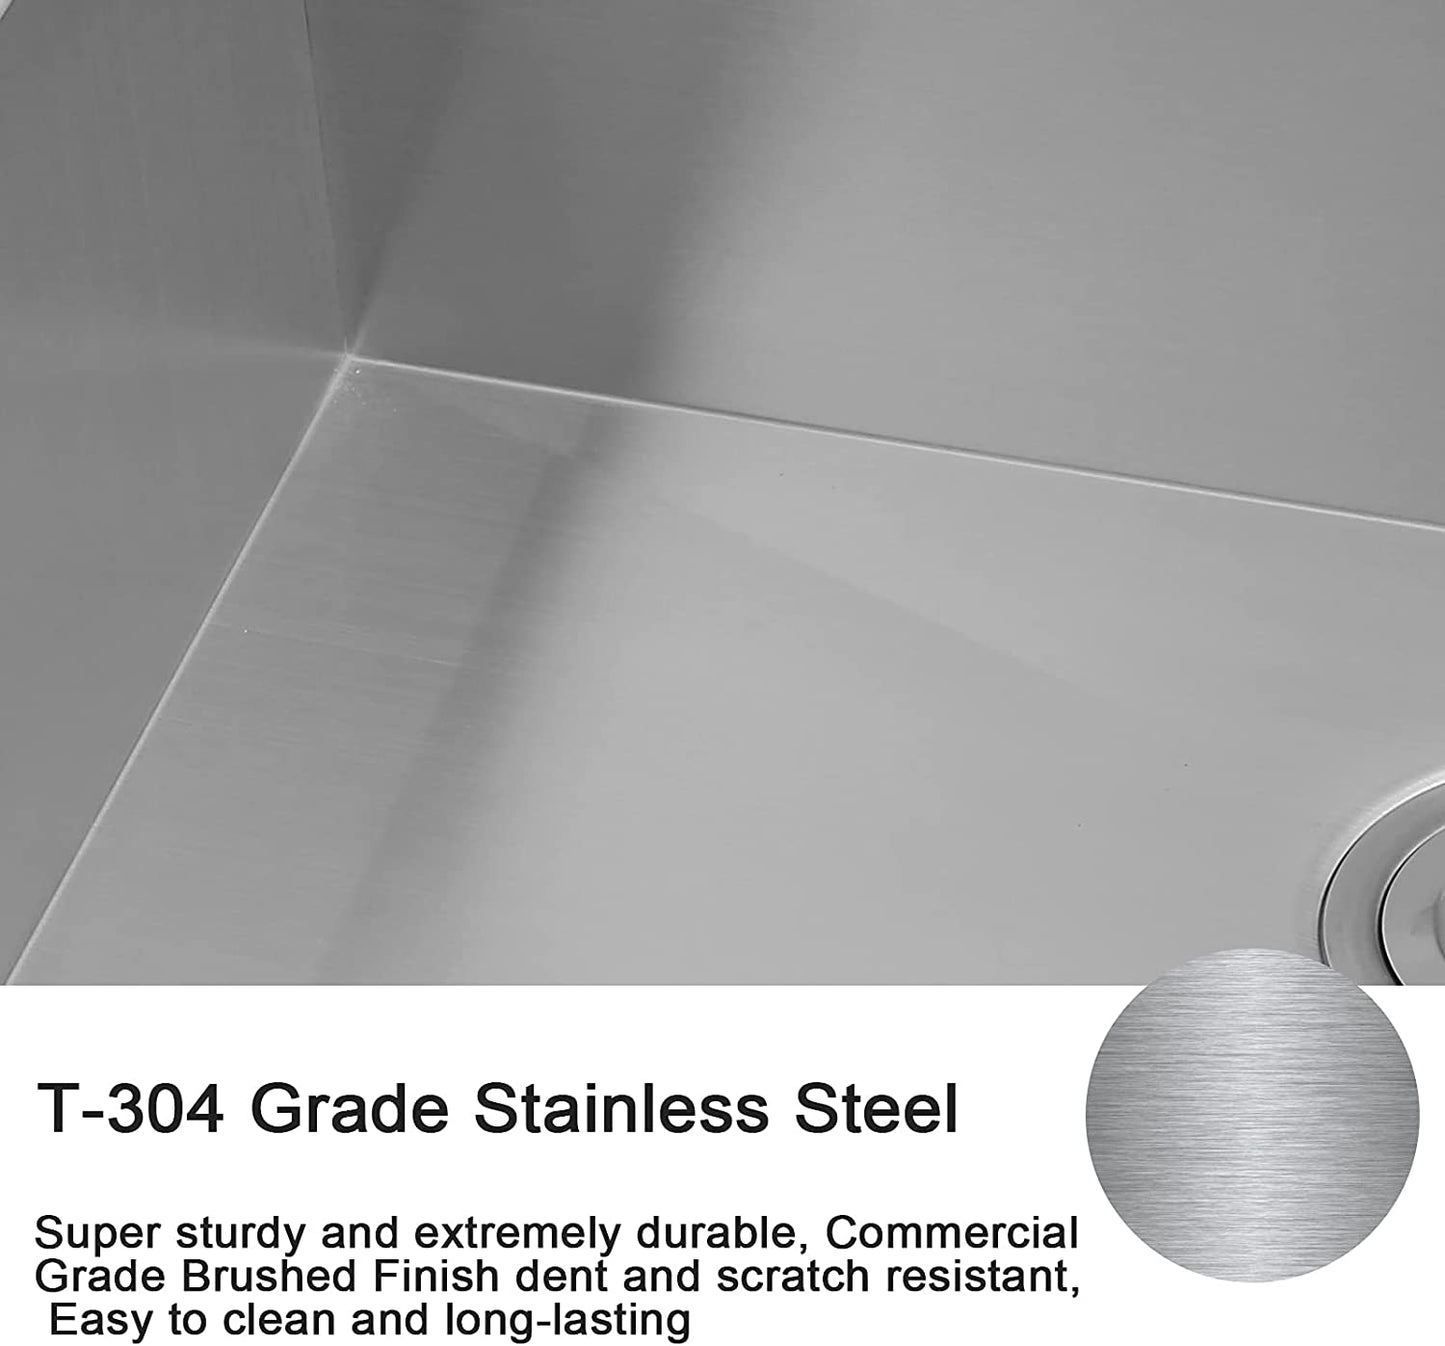 30" x 18" Single Bowl Stainless Steel Undermount Kitchen Sink (18 Gauge) ｜ALWEN